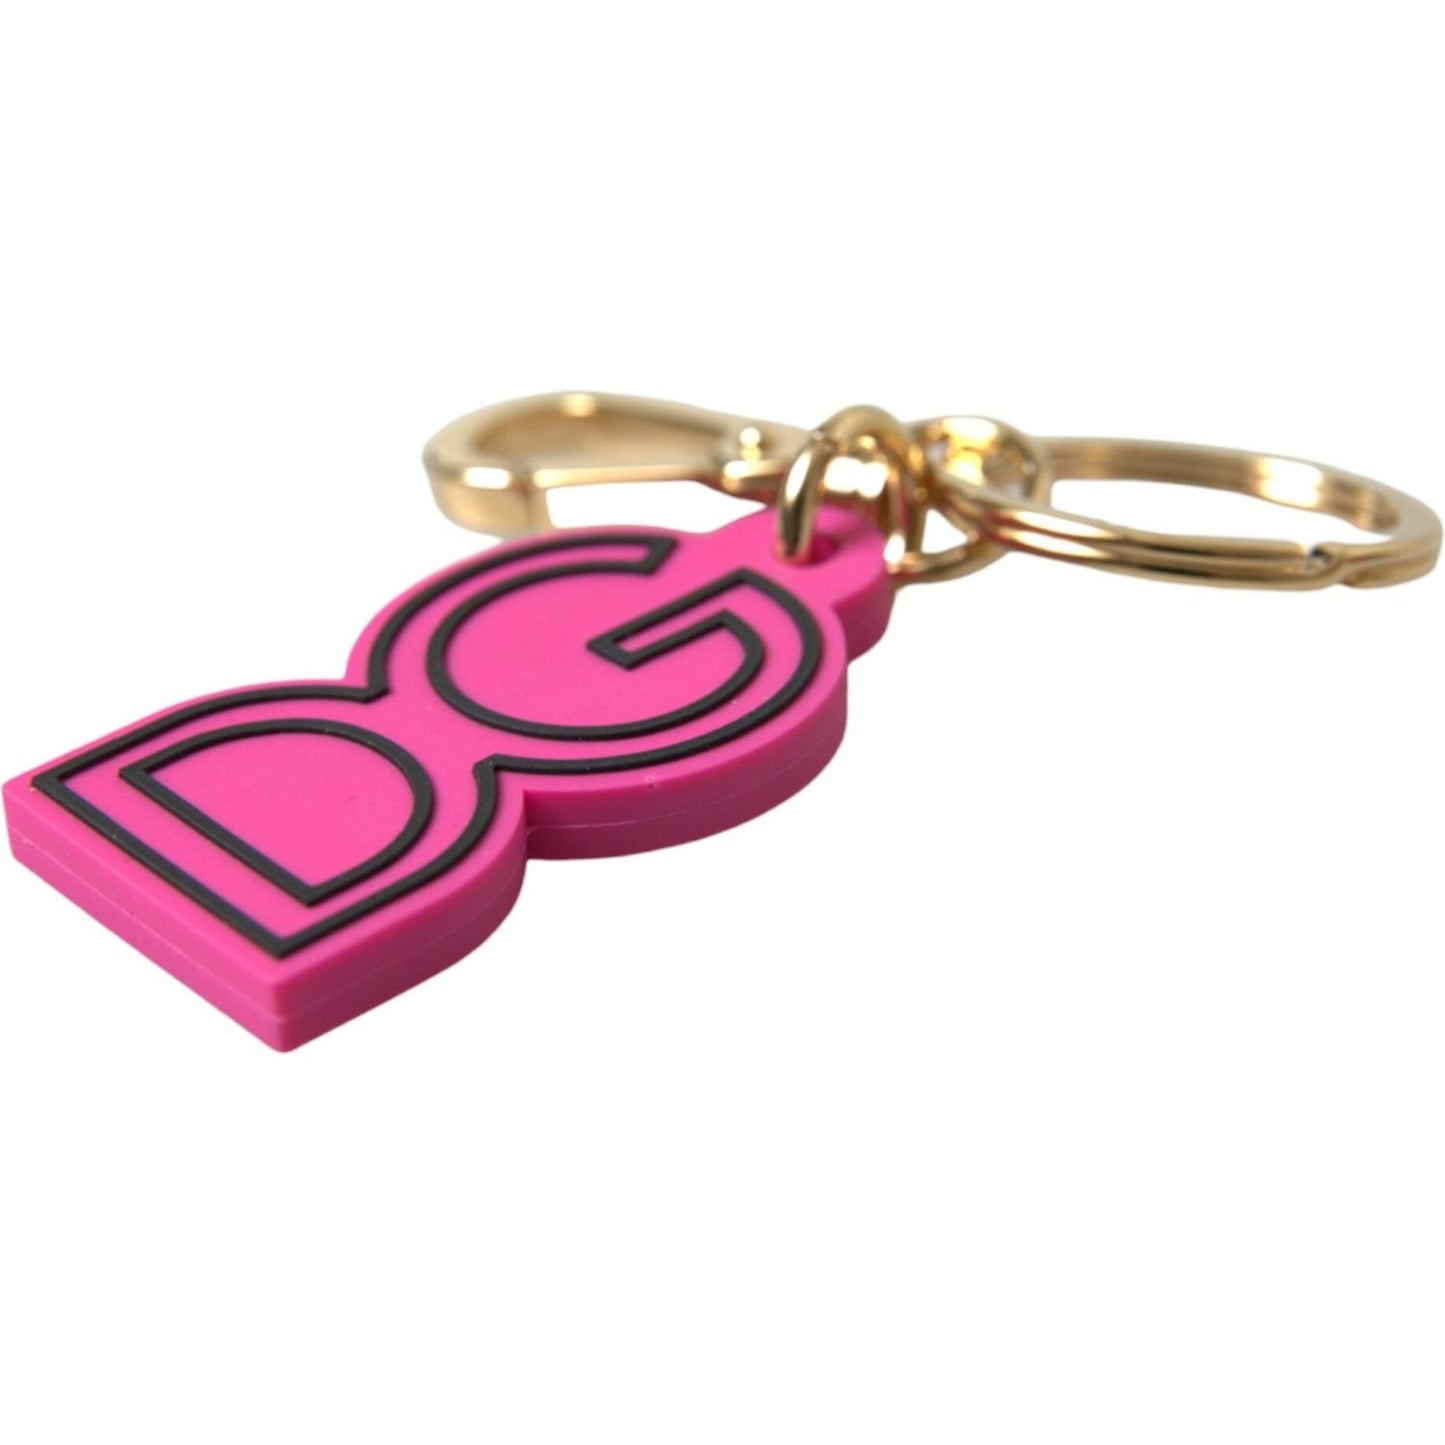 Dolce & GabbanaChic Gold and Pink Keychain EleganceMcRichard Designer Brands£139.00